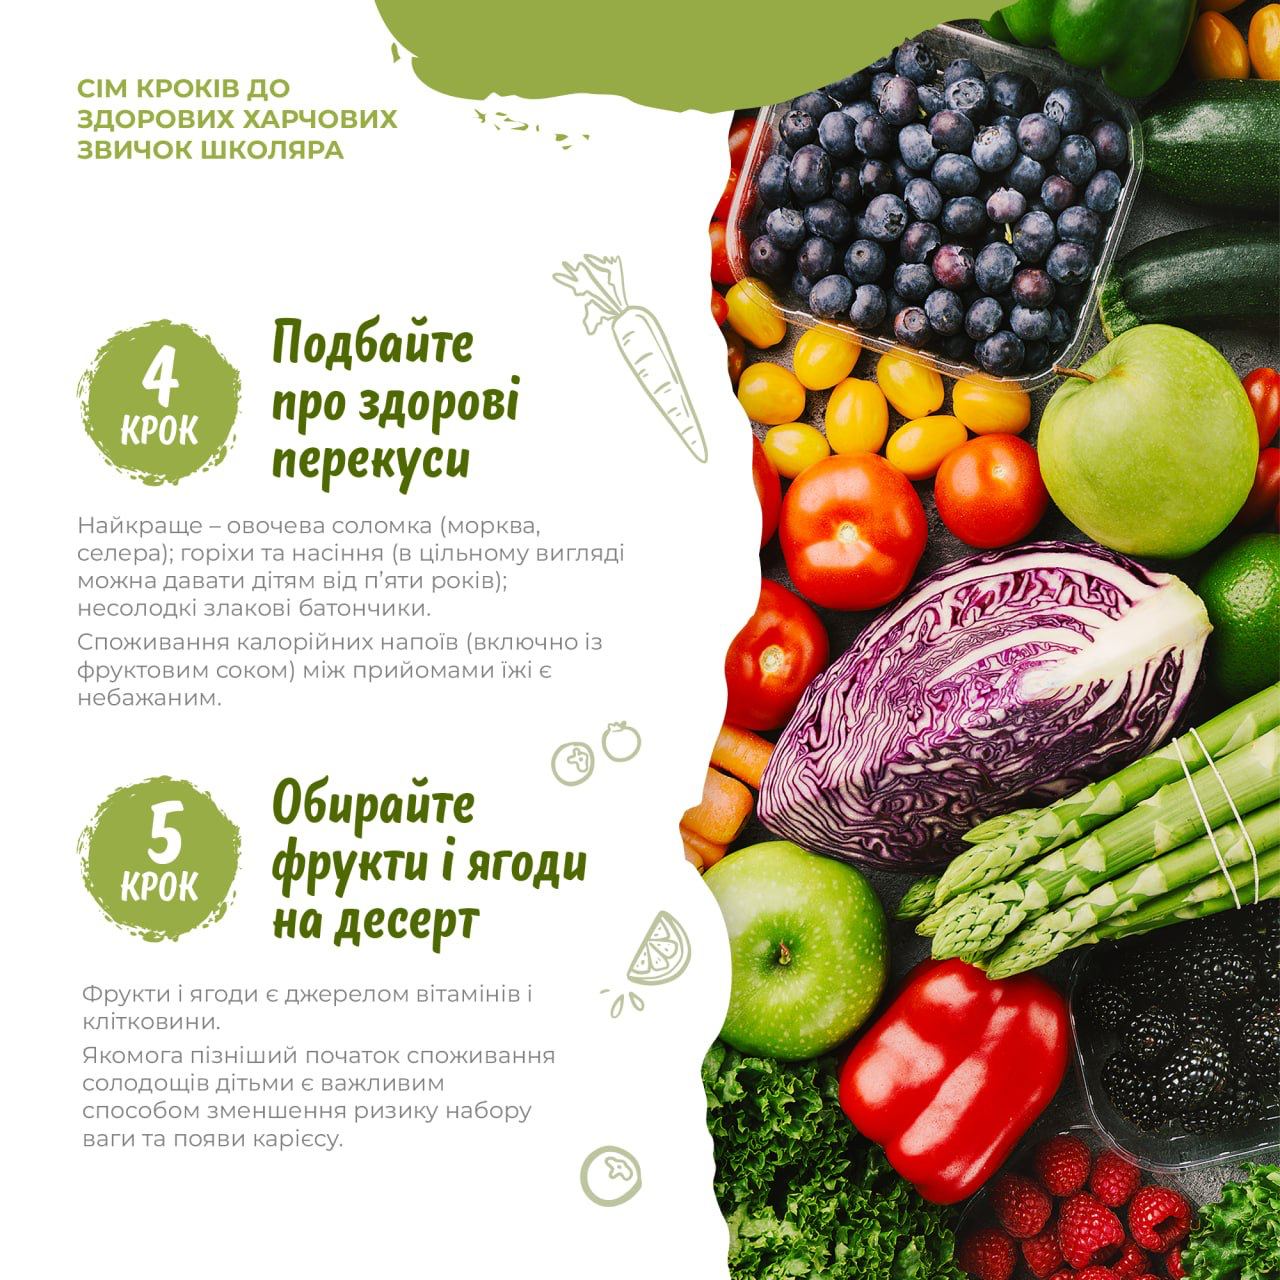 На зображенні овочі і фрукти в центрі напис: Крок 4 Подбайте про здорові перекуси, Крок 5 Обирайте фрукти і ягоди на десерт.